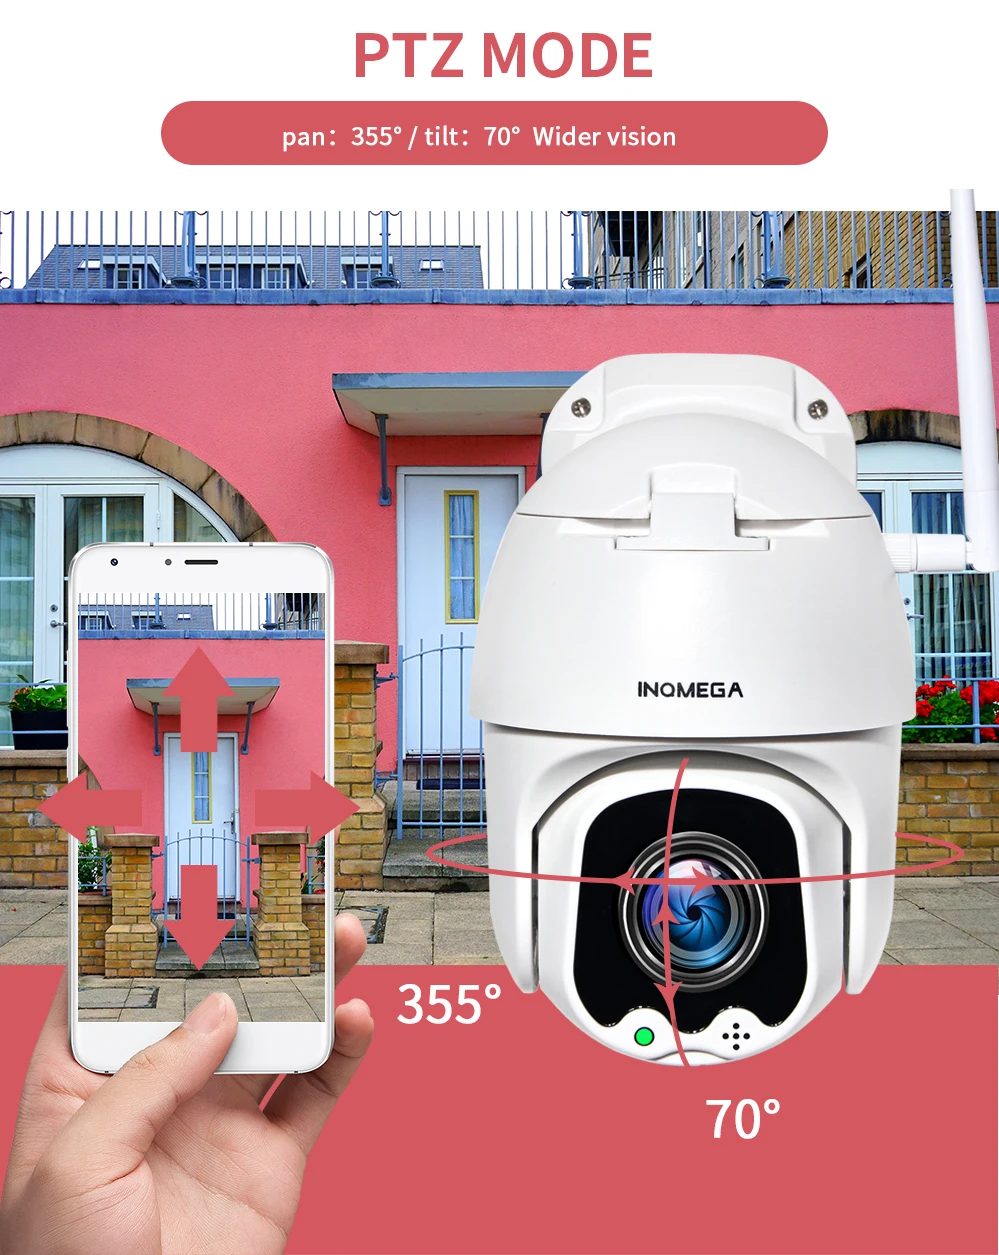 INQMEGA 5MP PTZ скоростная купольная IP камера WiFi Беспроводная 4X цифровая zoomoutor камера видеонаблюдения Водонепроницаемая сетевая CCTV камера